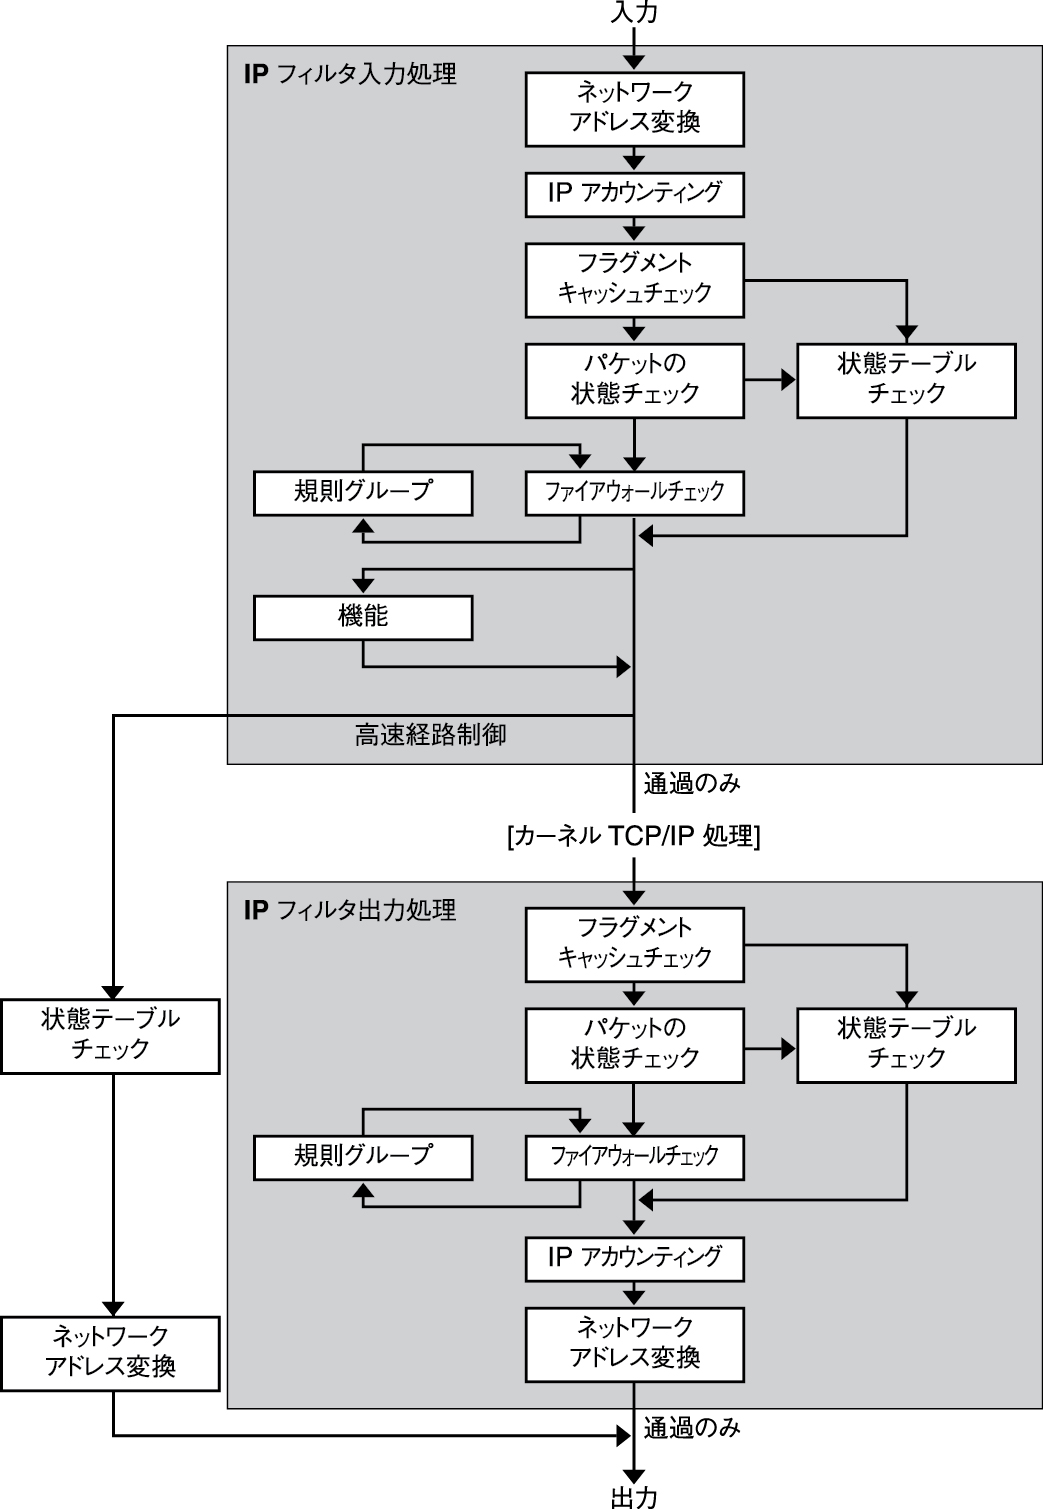 image:IP フィルタのパケット処理に関連する手順の順序を示しています。